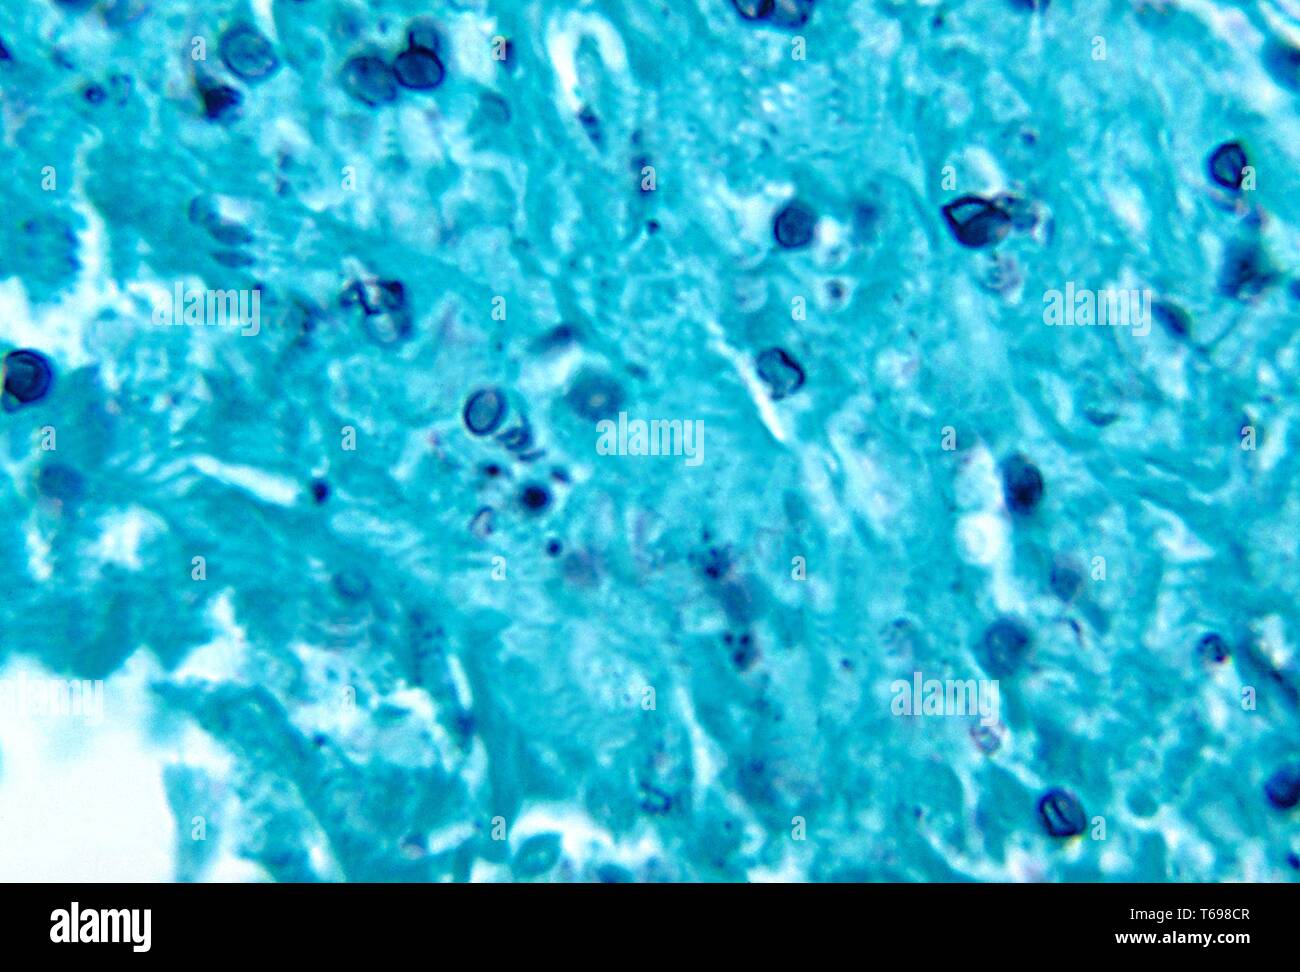 Methenamin silber Fleck photomicrograph des histopathologic Veränderungen in der Histoplasmose durch die dimorphic Pilz Histoplasma capsulatum, 1972 verursacht. Bild mit freundlicher Genehmigung Zentren für Krankheitskontrolle und Prävention (CDC)/Dr Libero Ajello. () Stockfoto